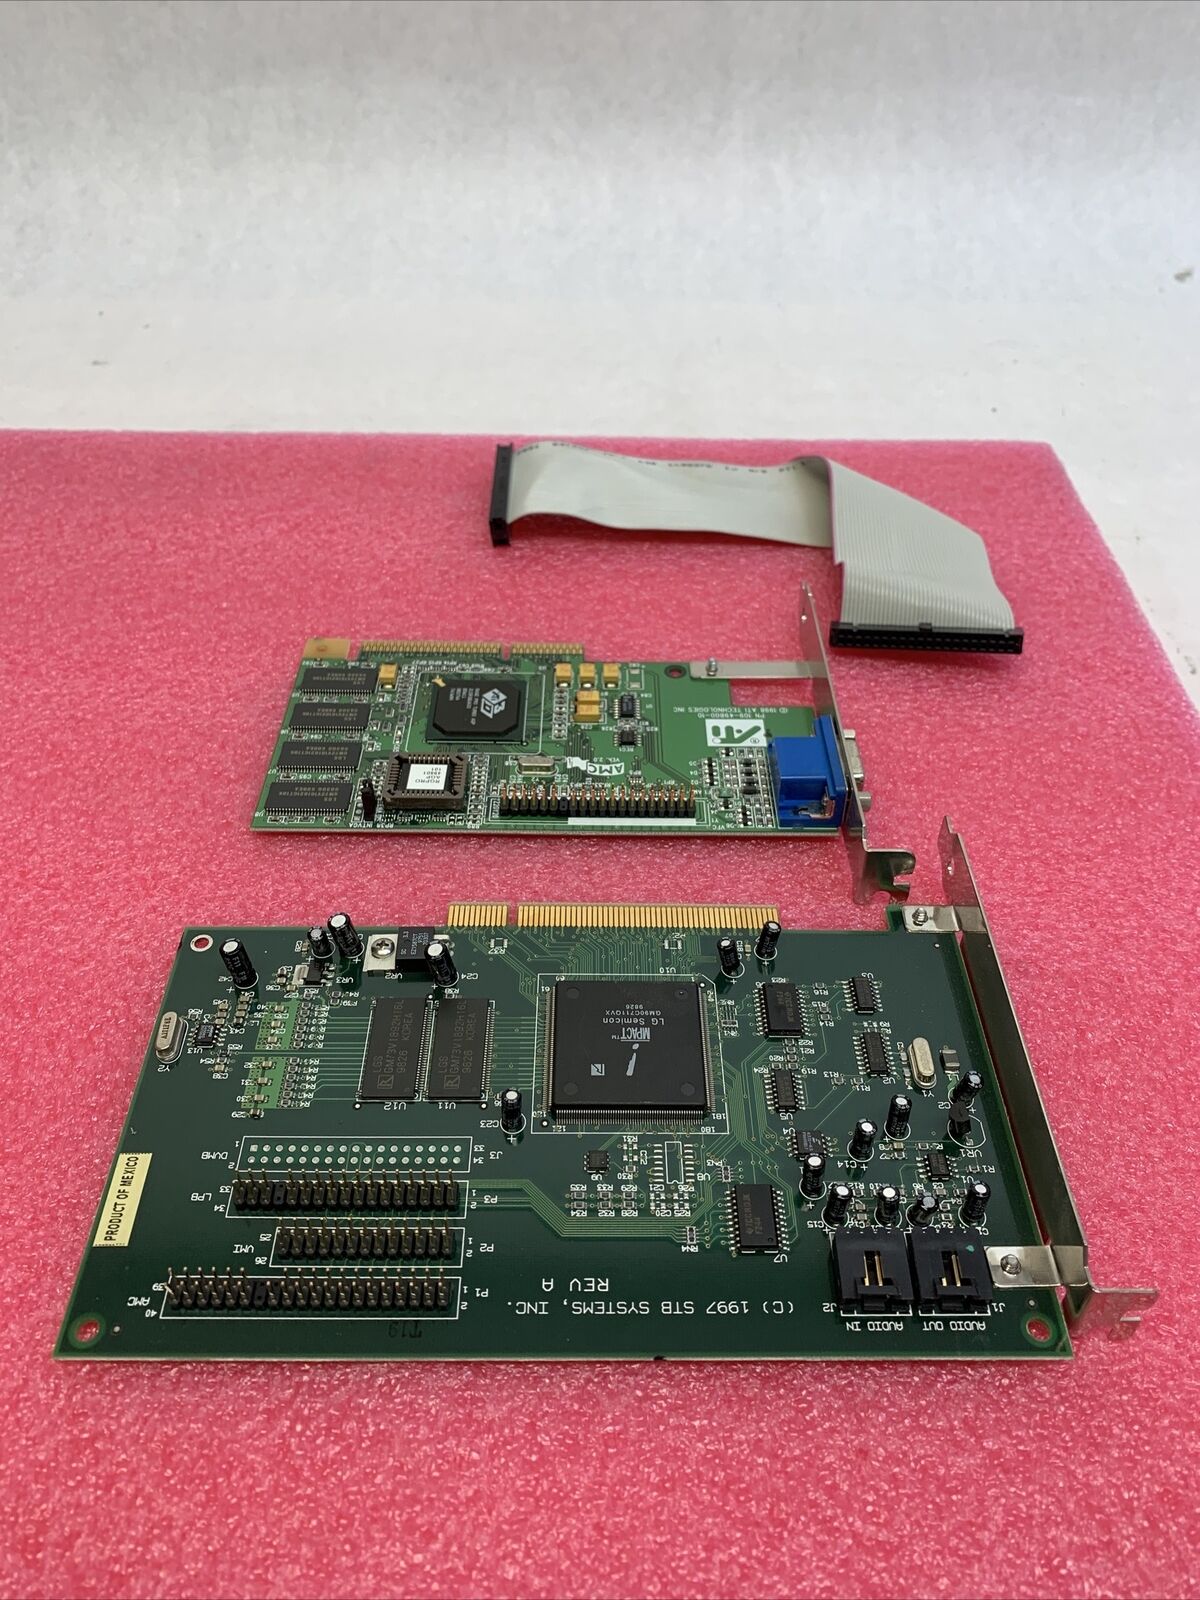 ATI 109-49800-11 Rage Pro Turbo AGP Graphics Card w/STB MPACT! 210-0307-001